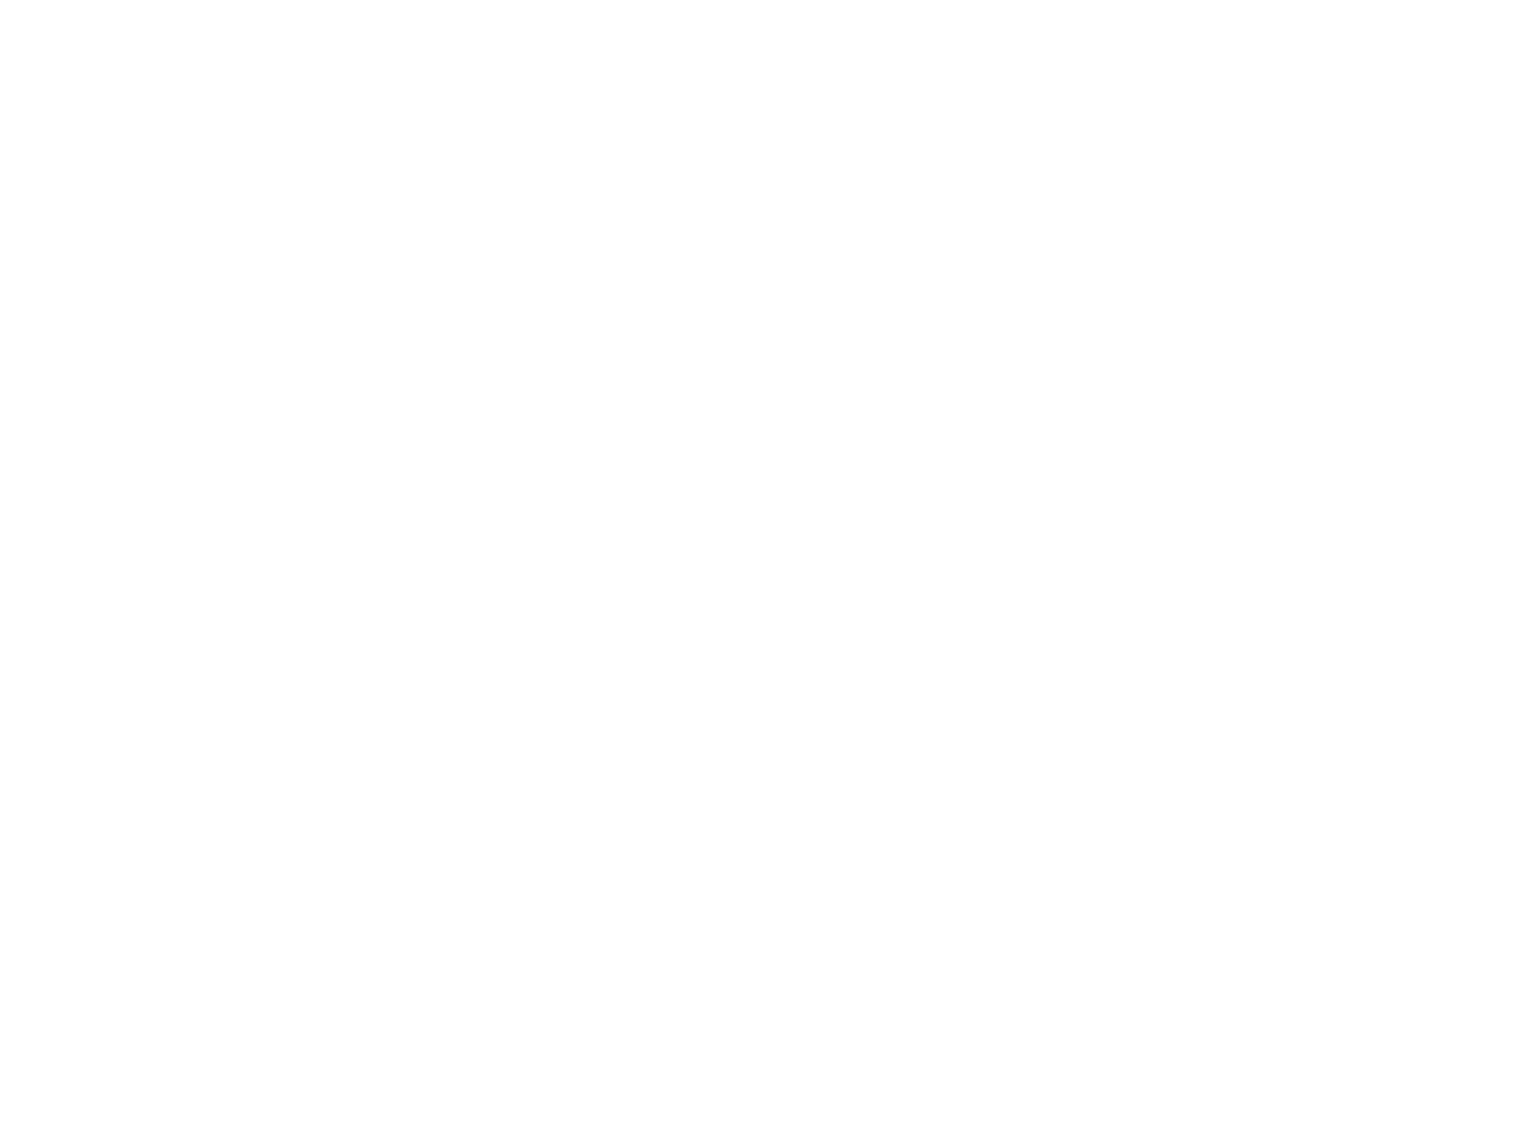 YCSS